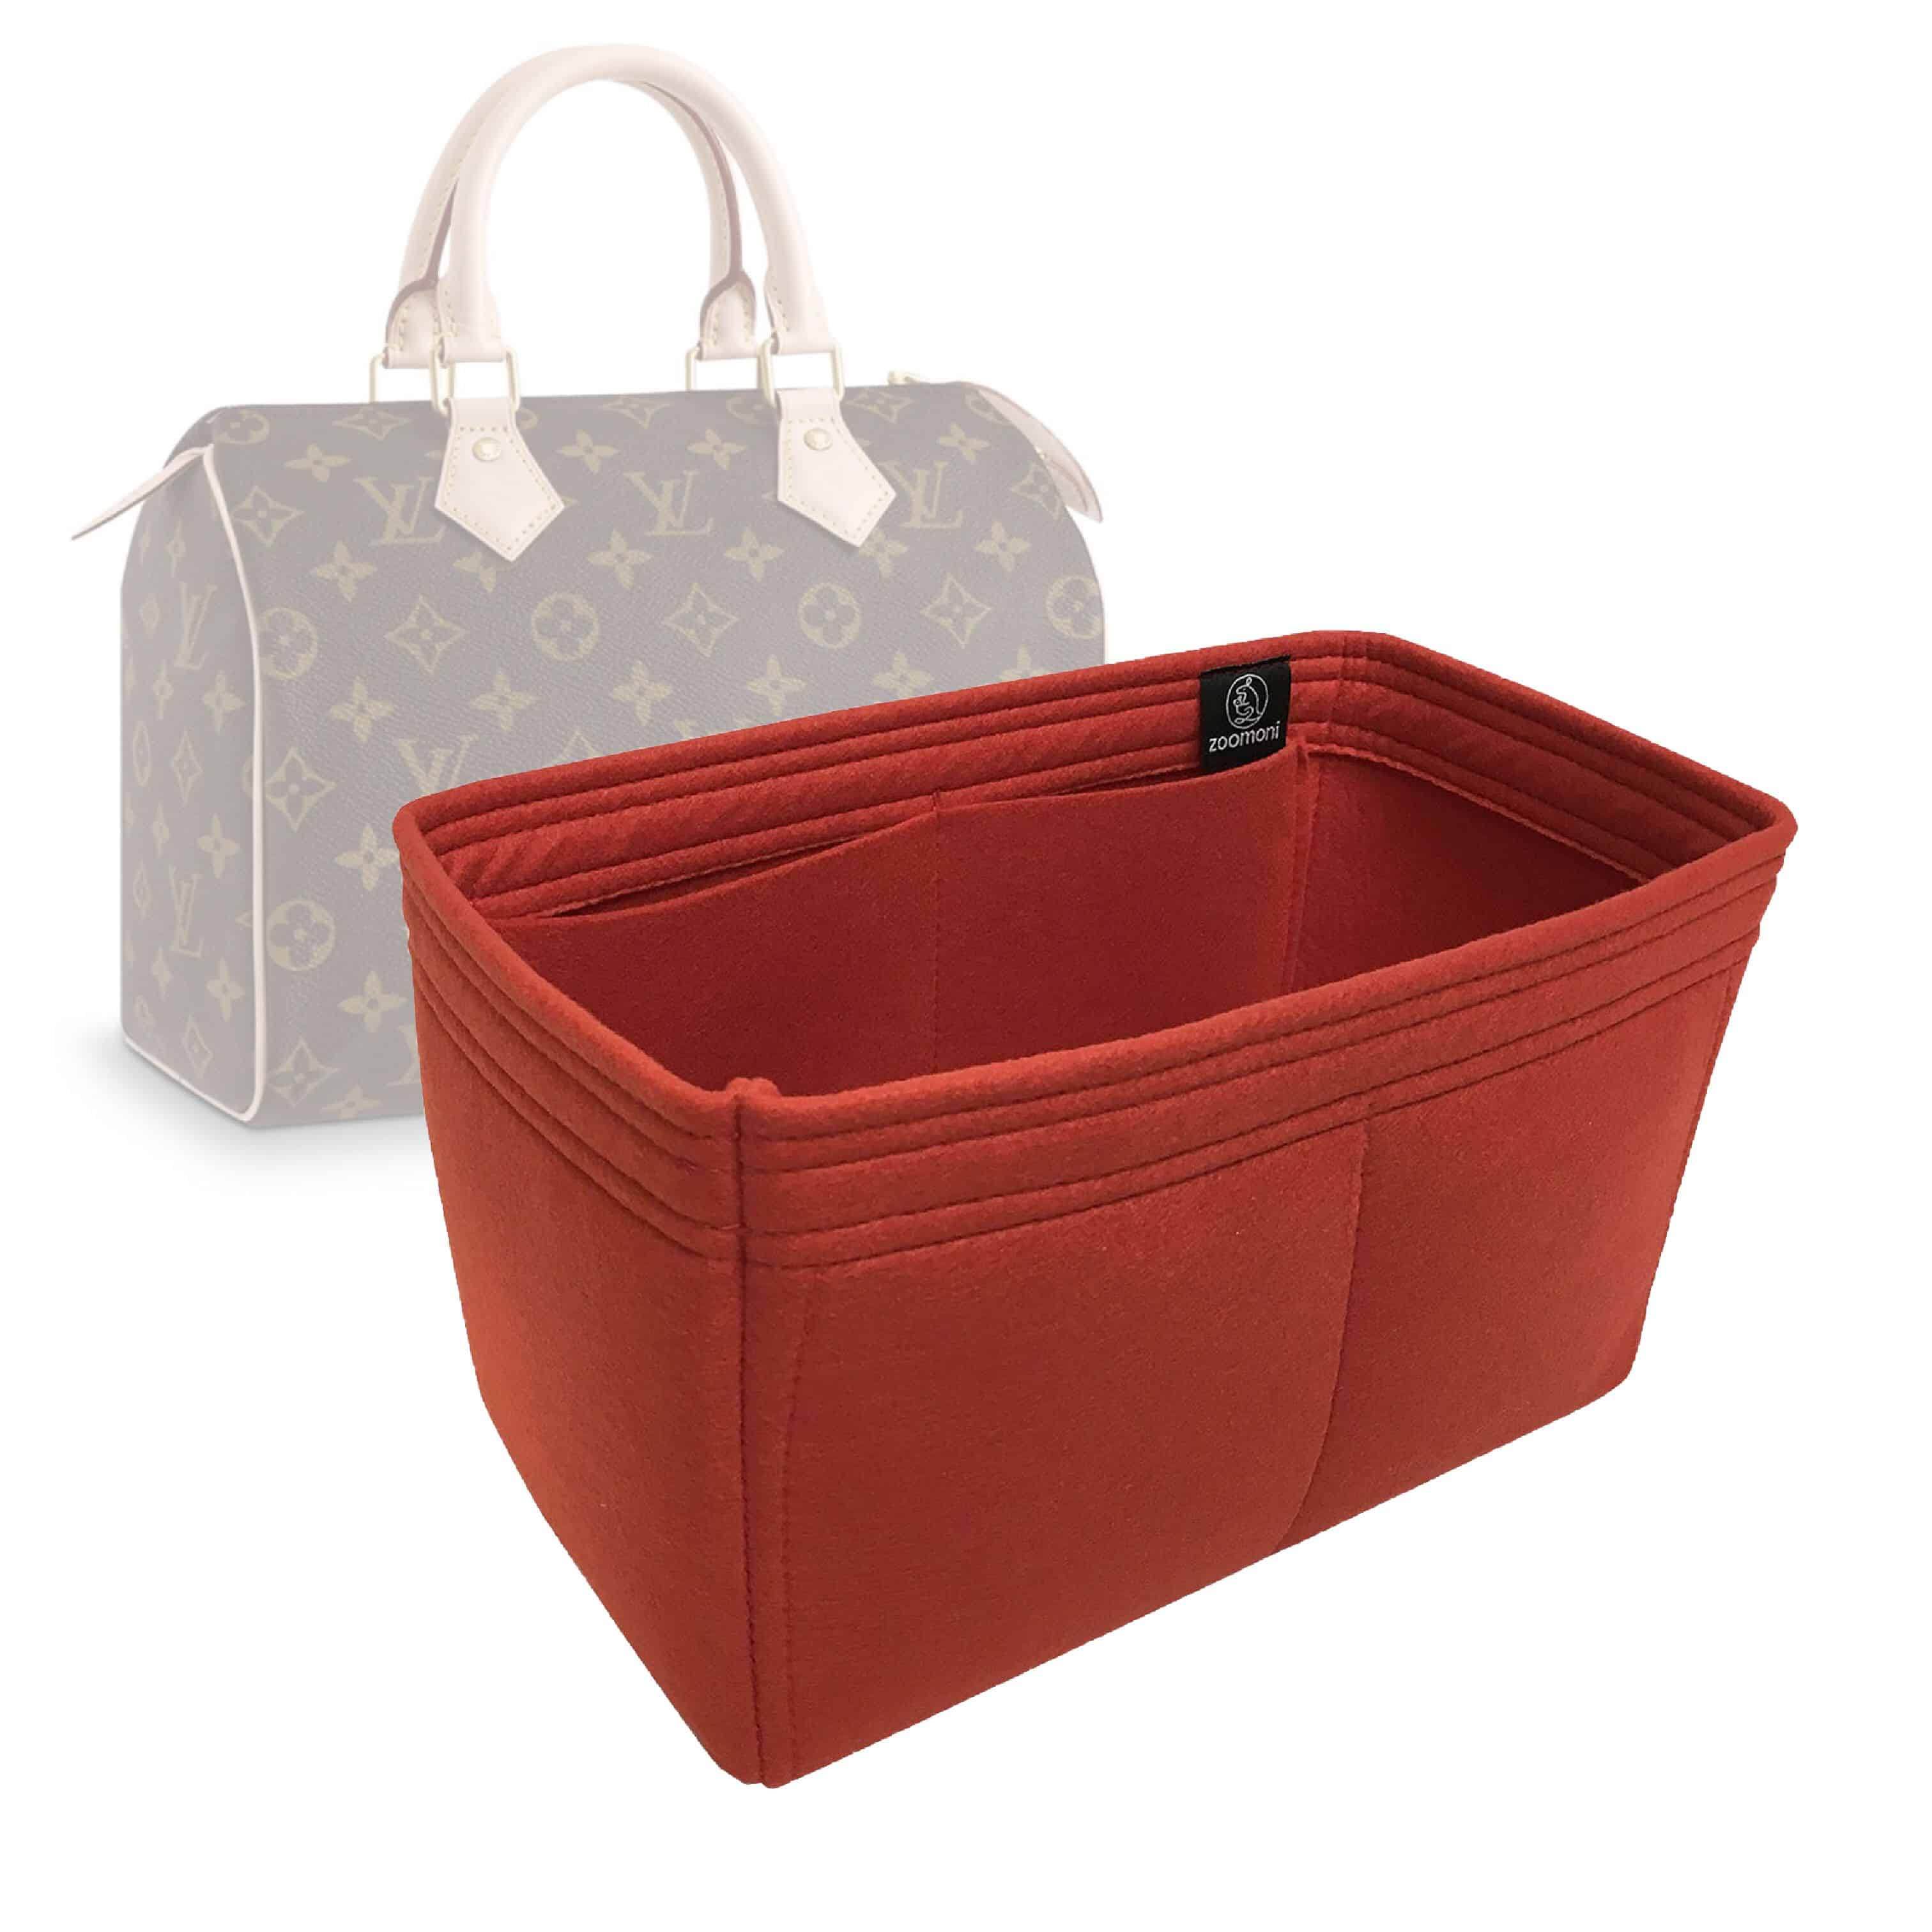 Bag Organizer for Louis Vuitton Speedy 25 (Organizer Type A) - Zoomoni